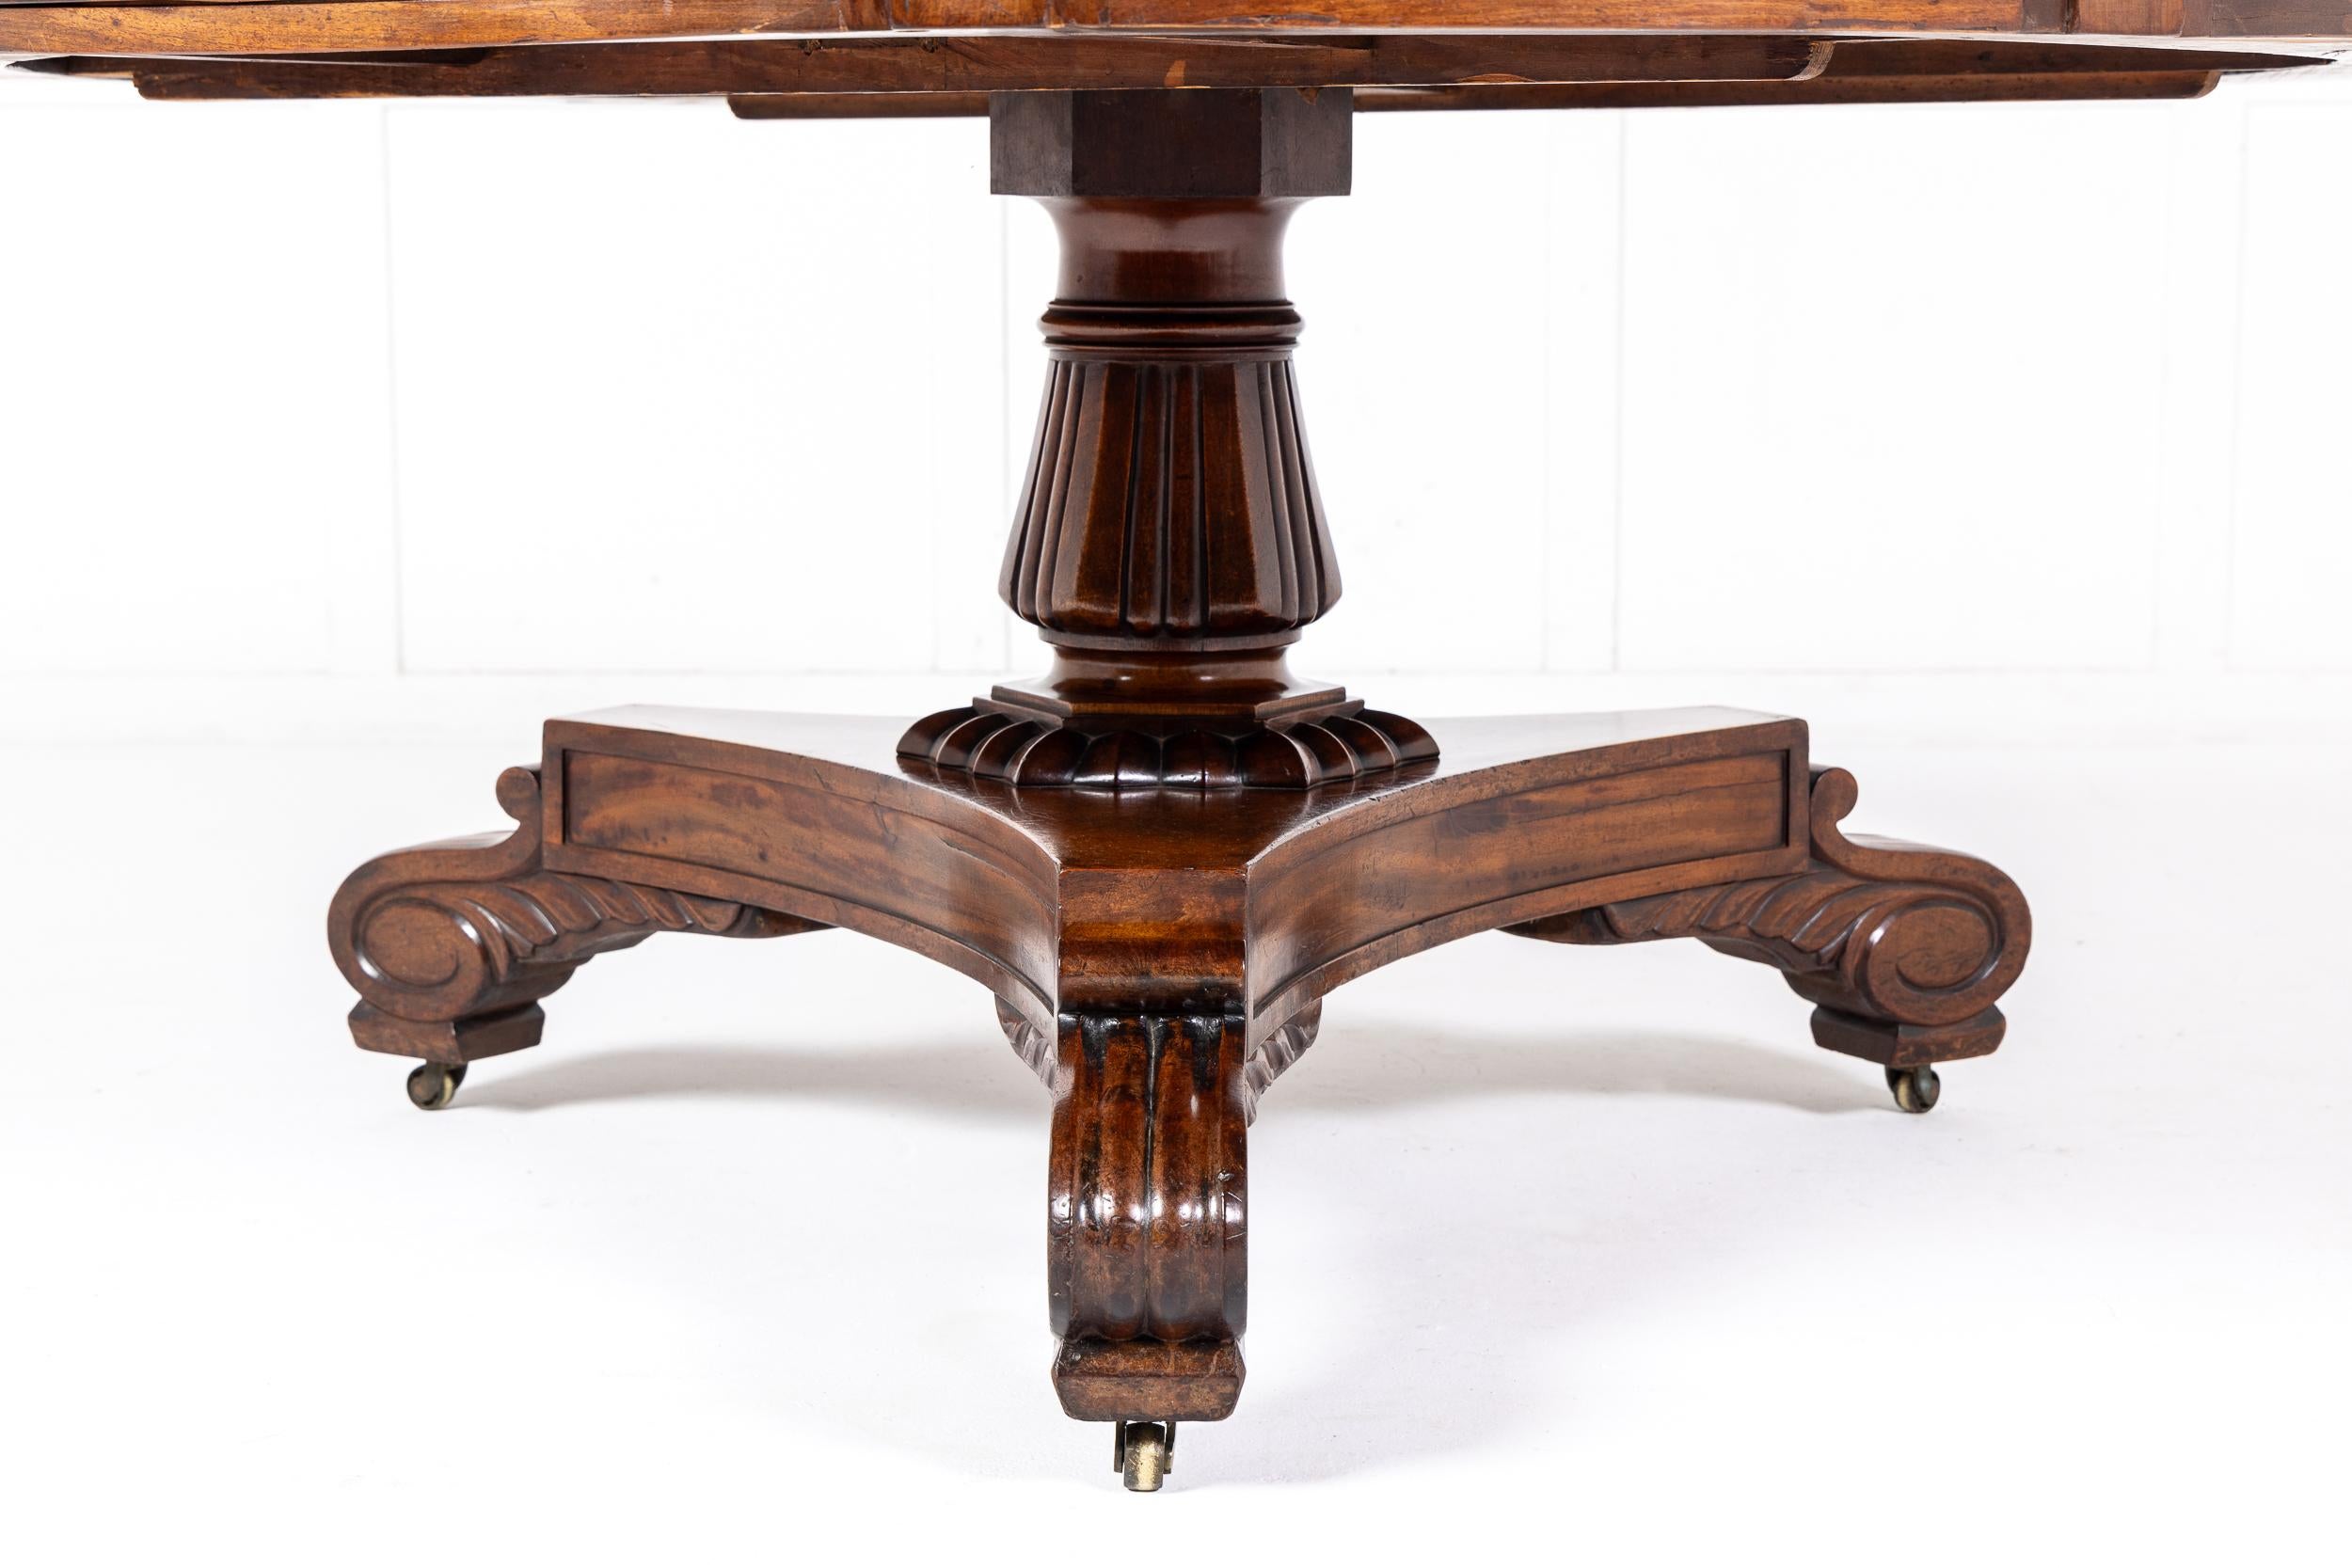 Ein fein proportionierter Mahagoni-Trommel-, Mittel- oder Bibliothekstisch aus der späten Regency-Zeit oder aus der Zeit Wilhelms IV. um 1830 mit einer außergewöhnlichen Fiddle Back Top.

Dieser Tisch basiert auf Entwürfen für Bibliothekstische der